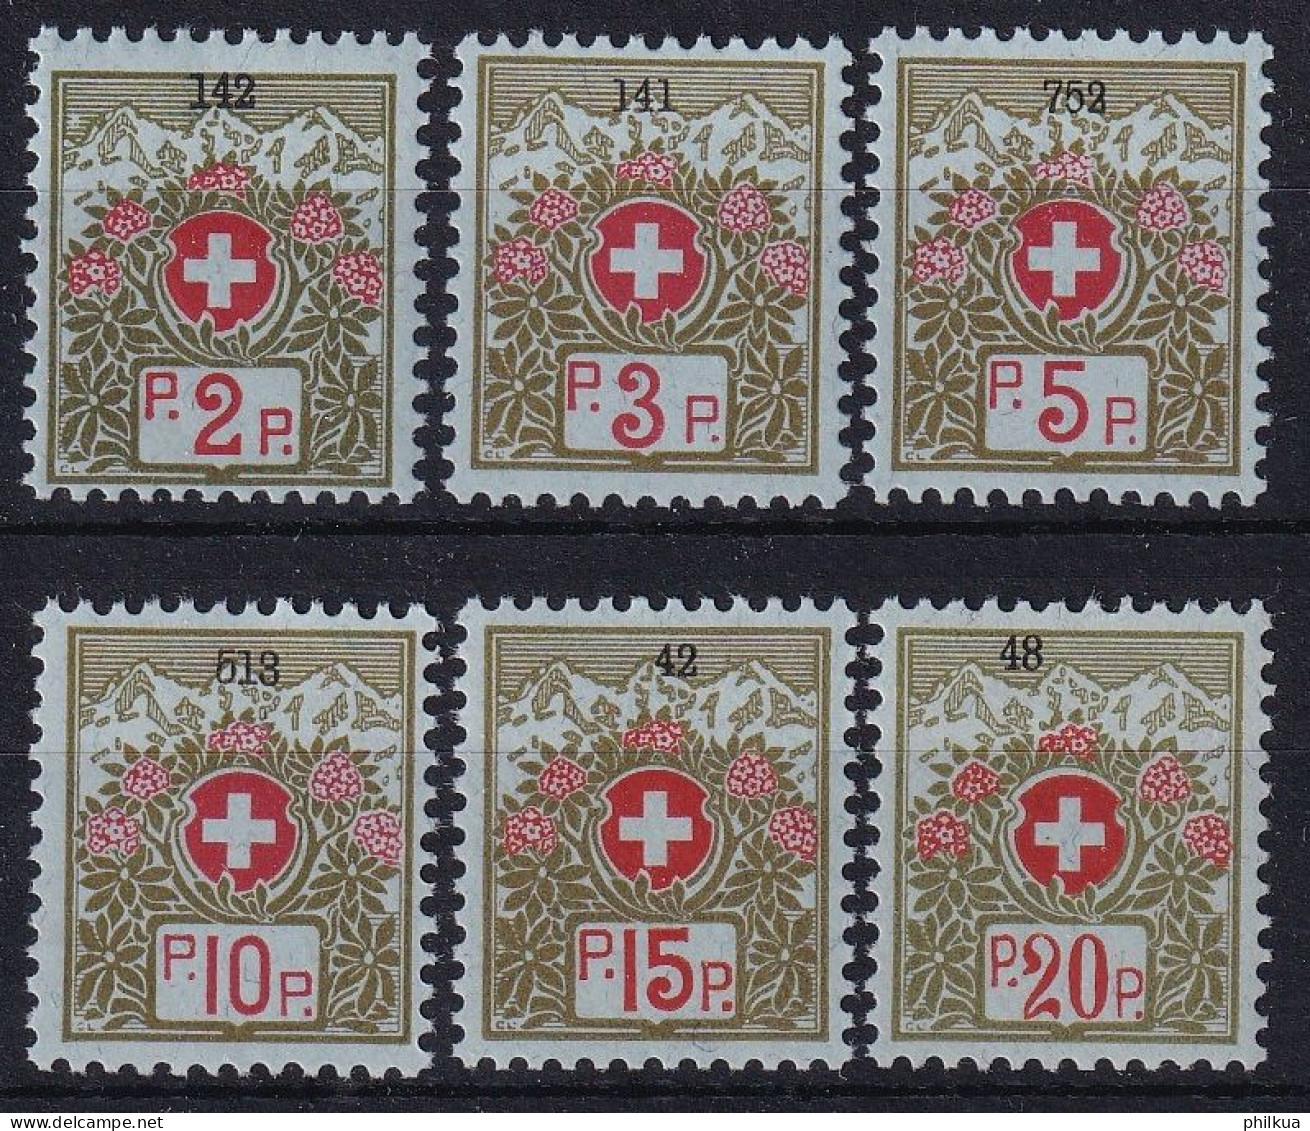 Portofreiheit Zumst. 2A-7A / MiNr. 2I-7I  - Schweizer Wappen Und Alpenrosen Mit Nummer - Postfrisch/**/MNH - Vrijstelling Van Portkosten